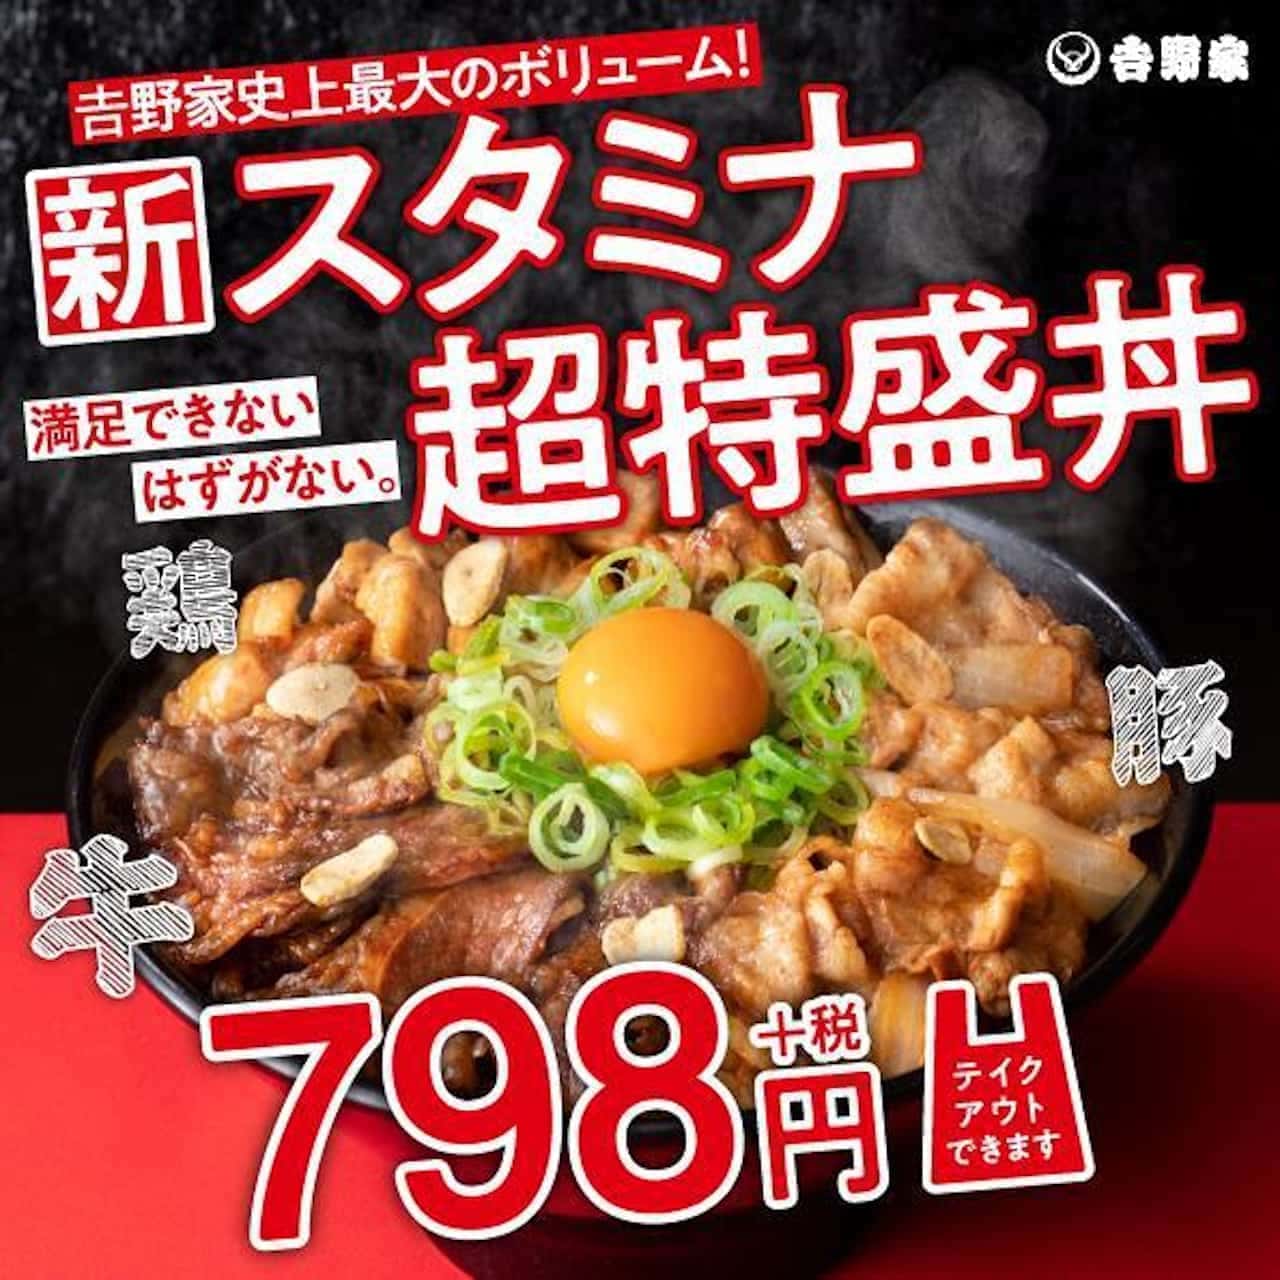 吉野家史上最大のボリューム スタミナ超特盛丼 テイクアウト対応 牛カルビ 豚肉 鶏肉を全部のせで1 700kcal超 えん食べ